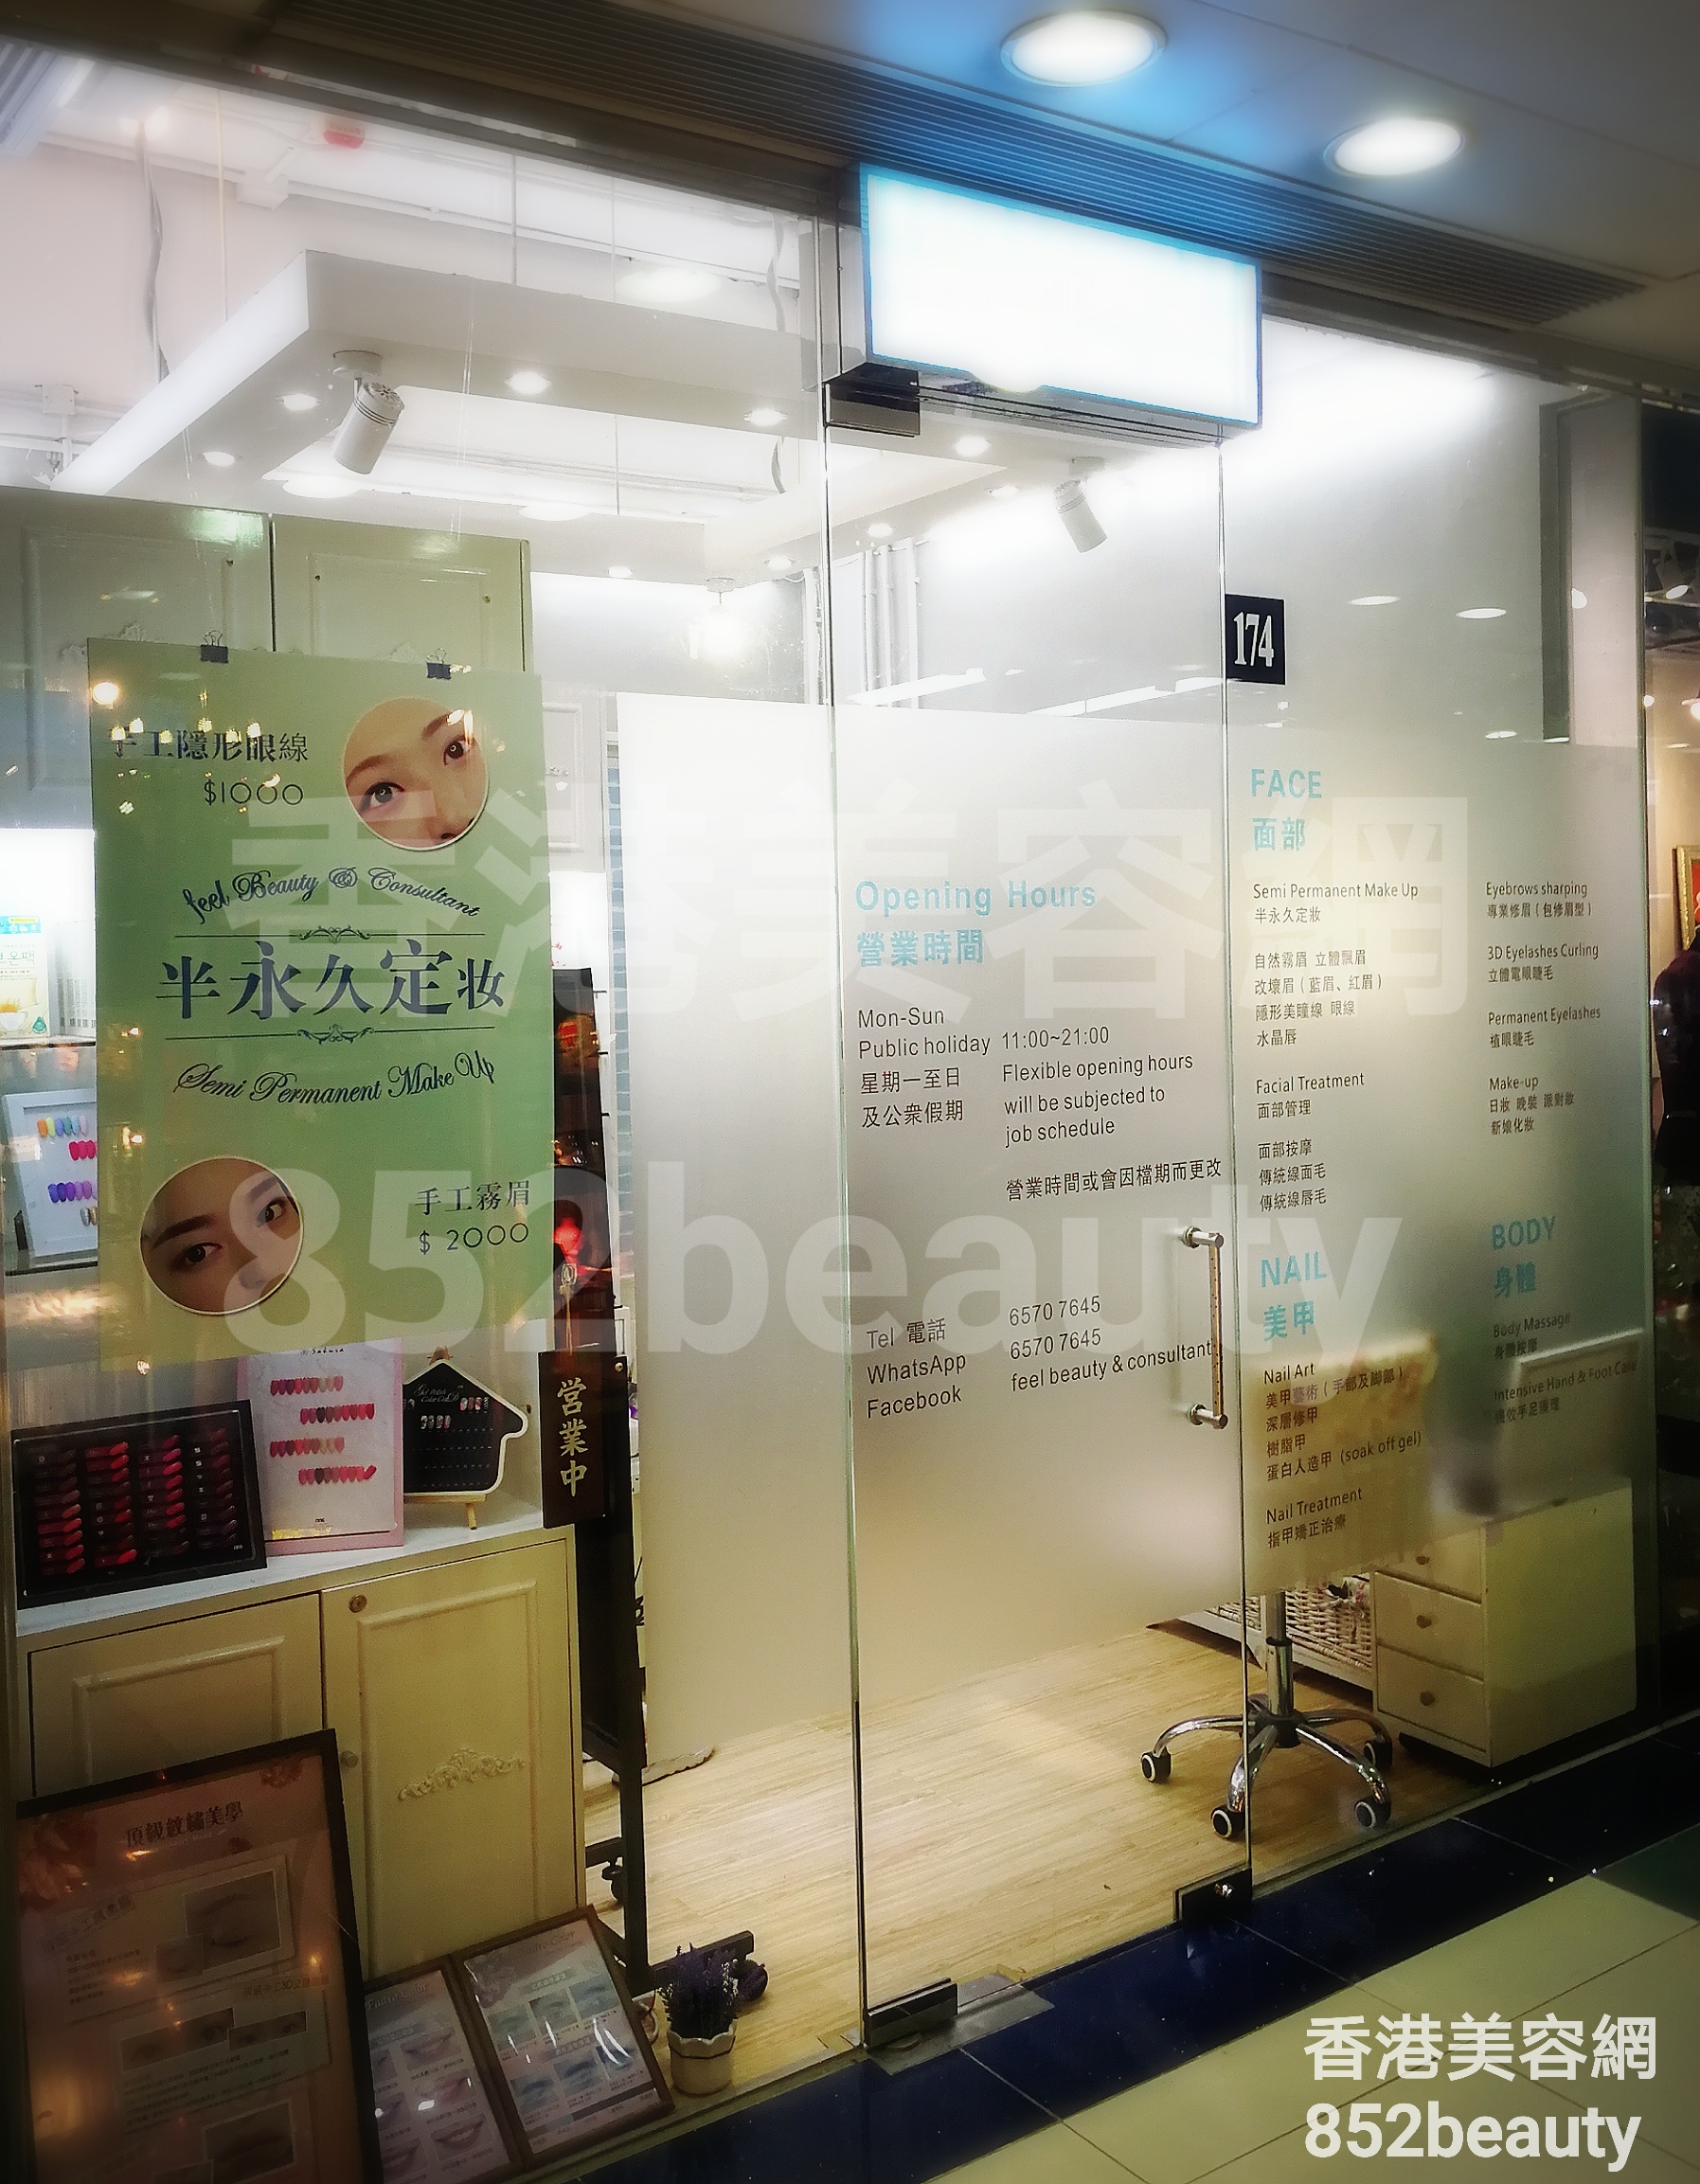 香港美容網 Hong Kong Beauty Salon 美容院 / 美容師: Feel beauty & consultant